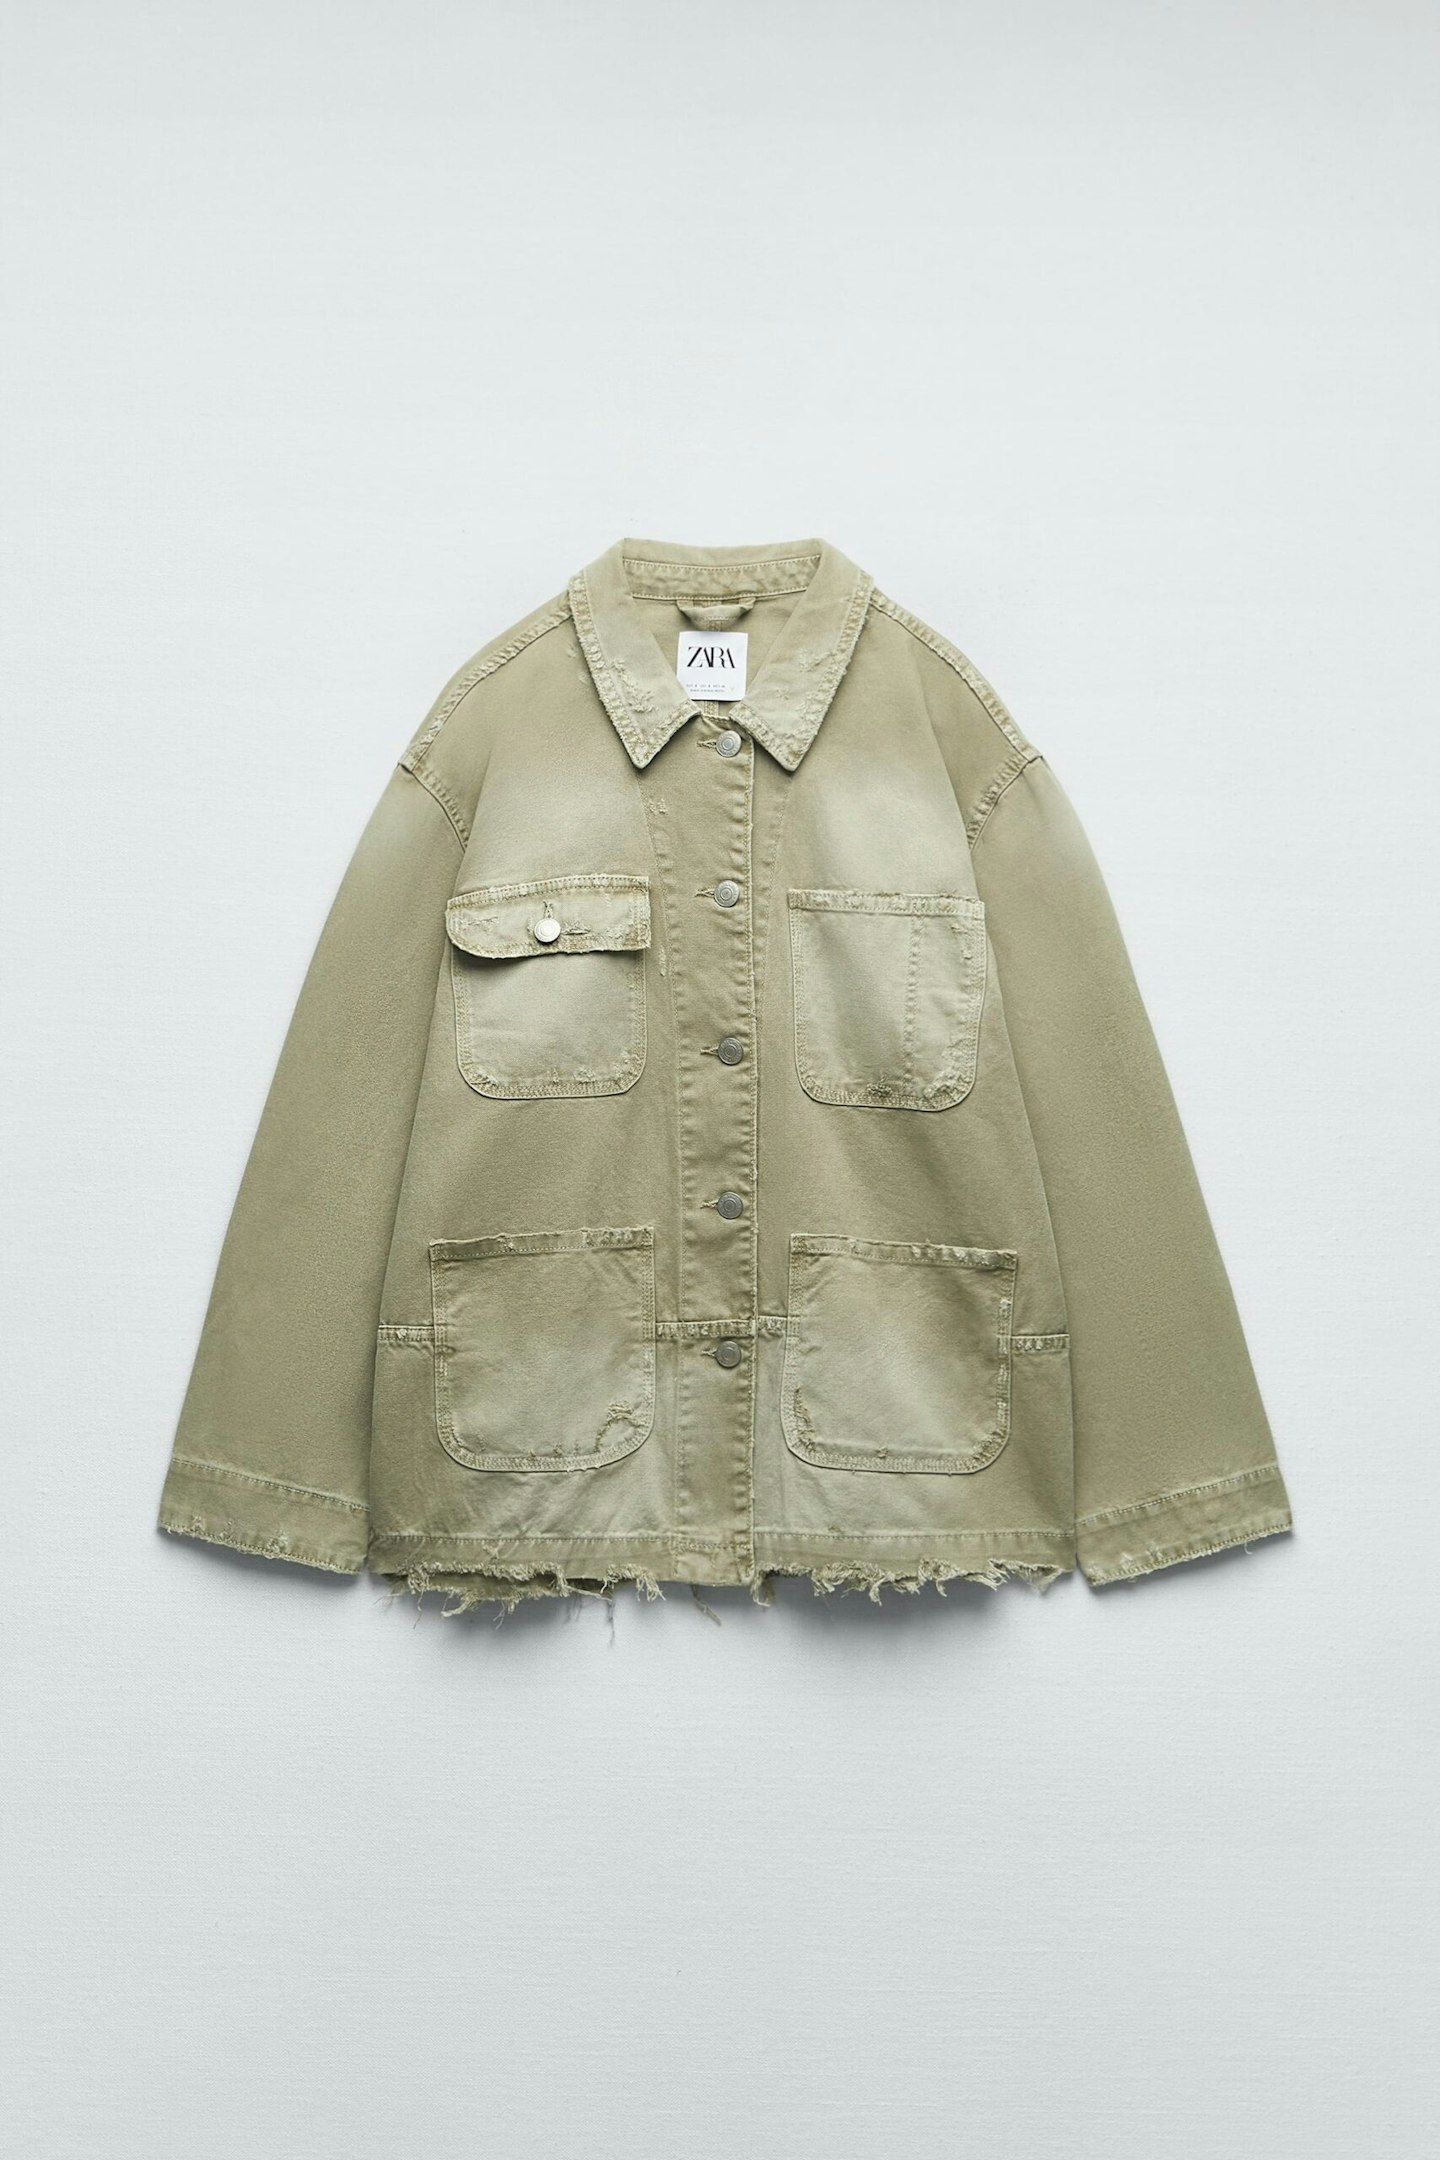 Zara, Faded Jacket With Pockets